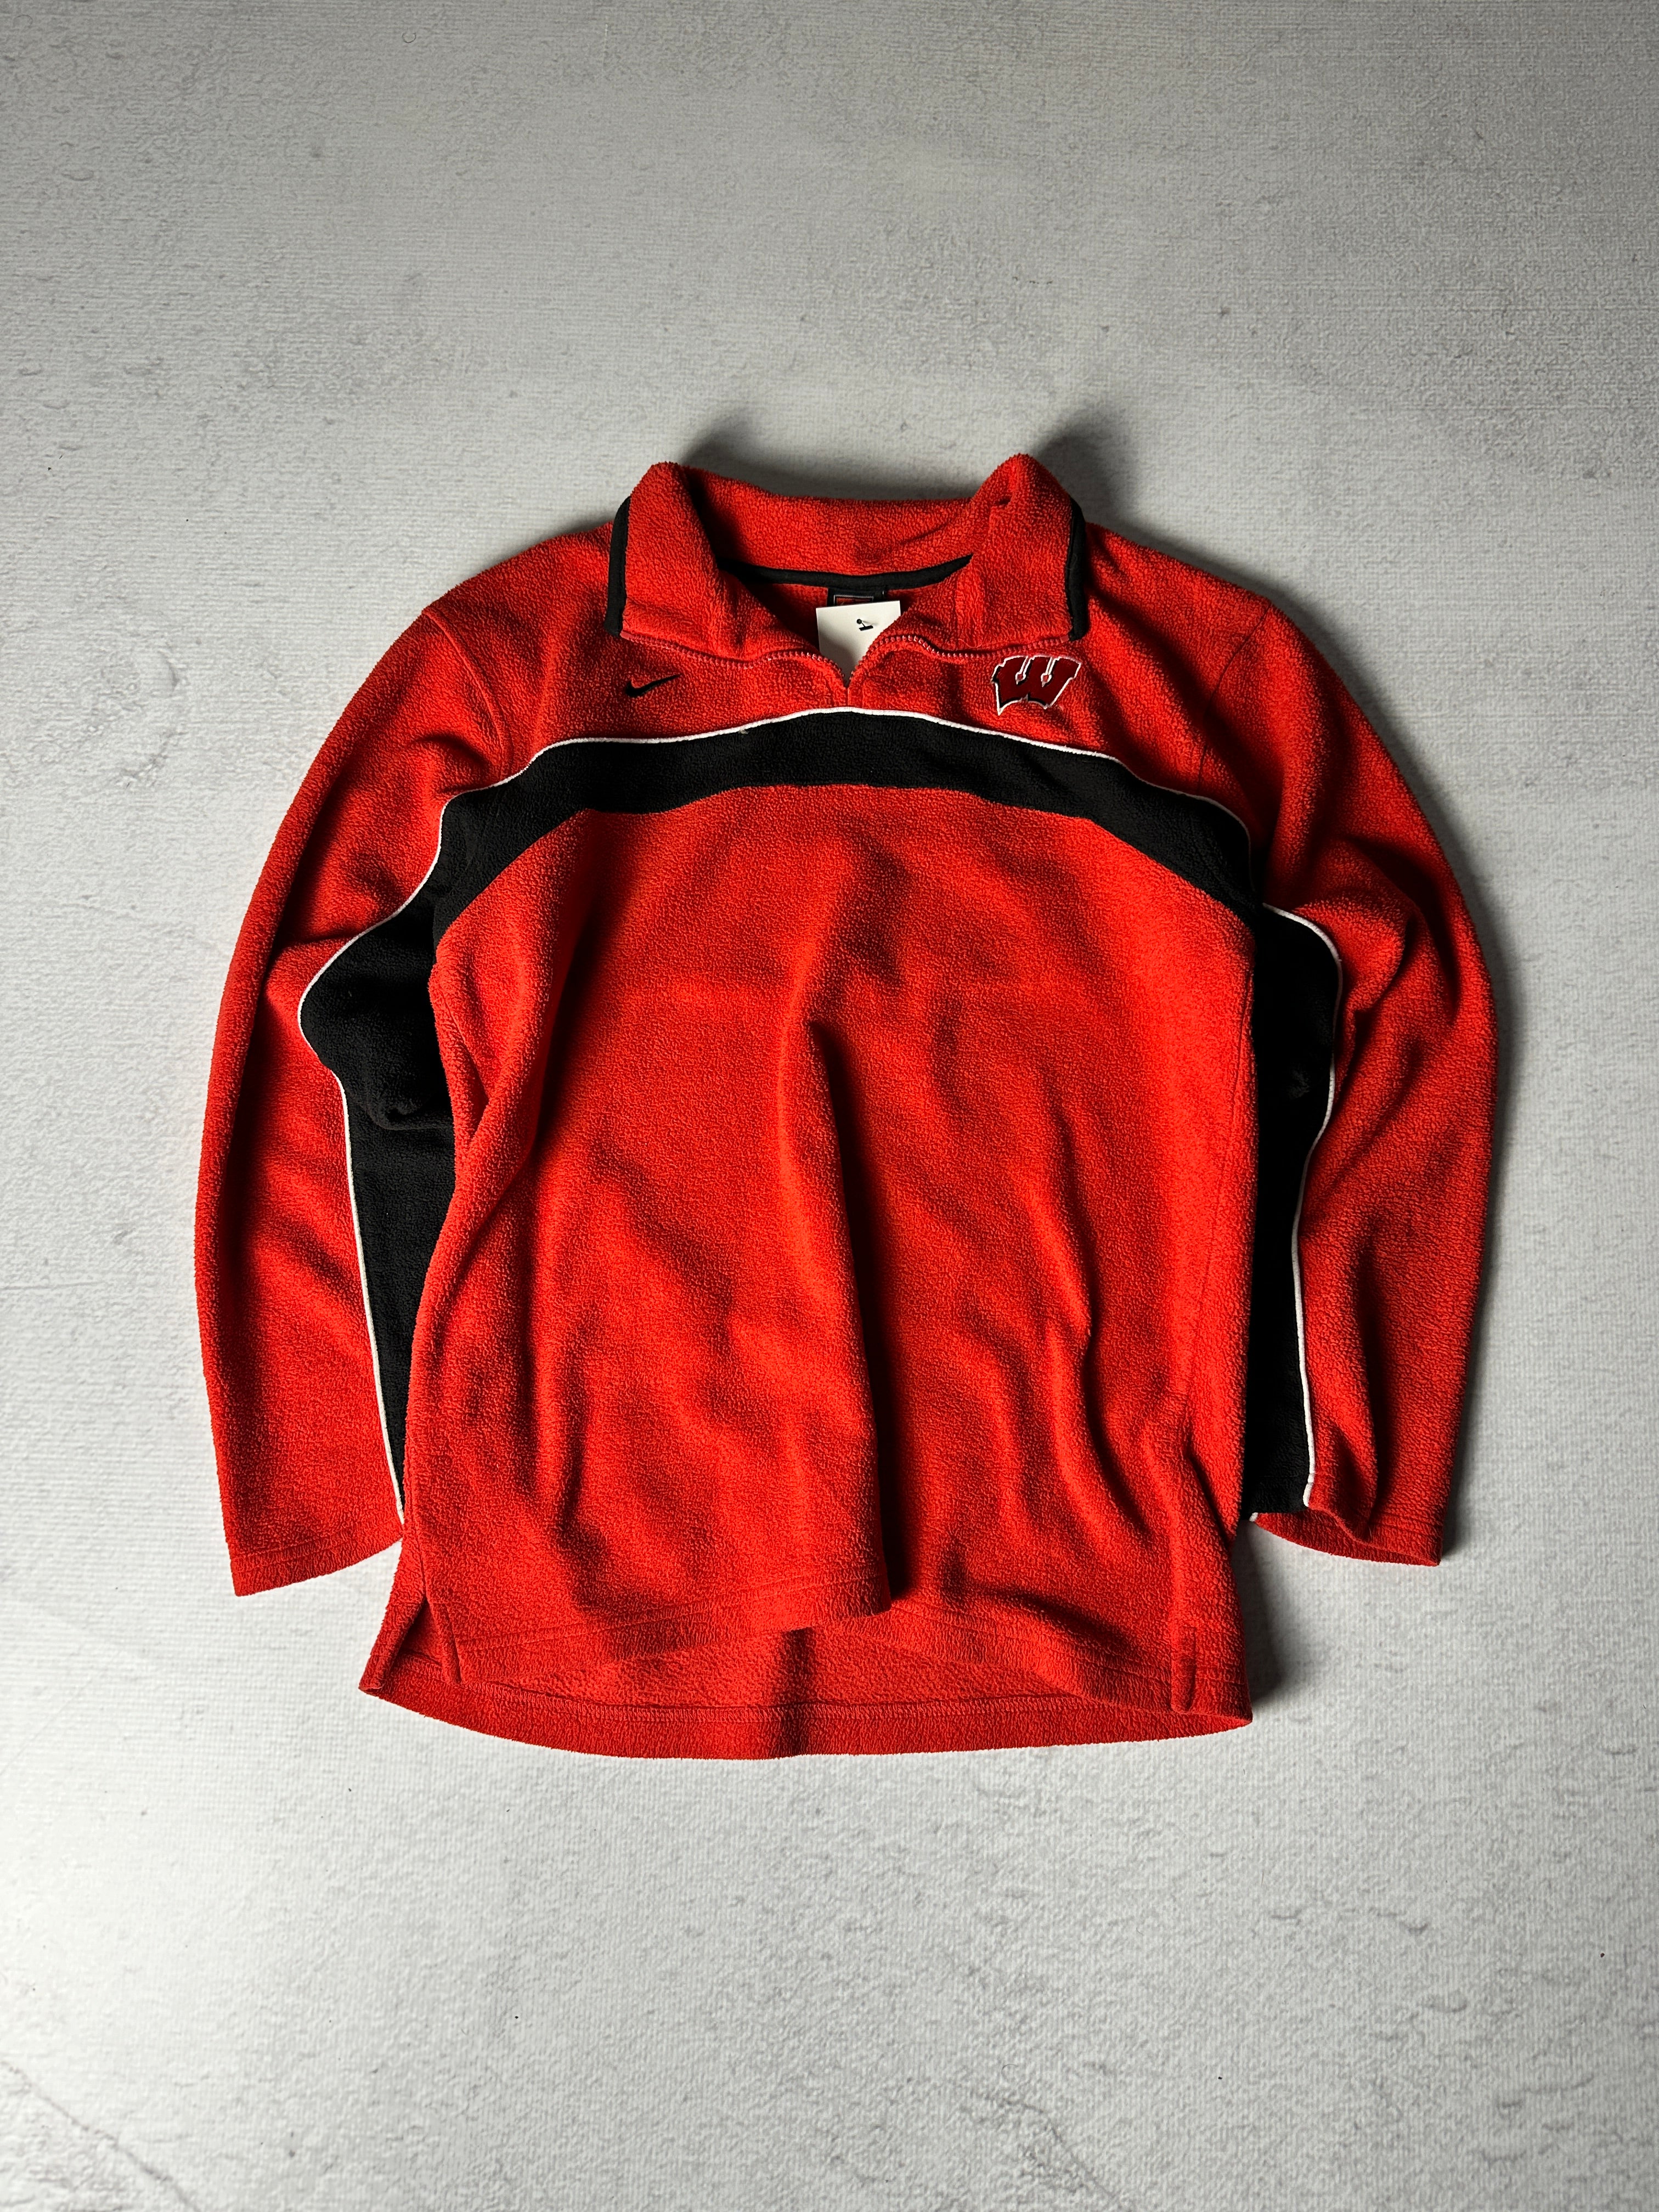 Vintage NCAA Wisconsin Badgers 1/4 Zip Fleece Sweatshirt - Men's Small